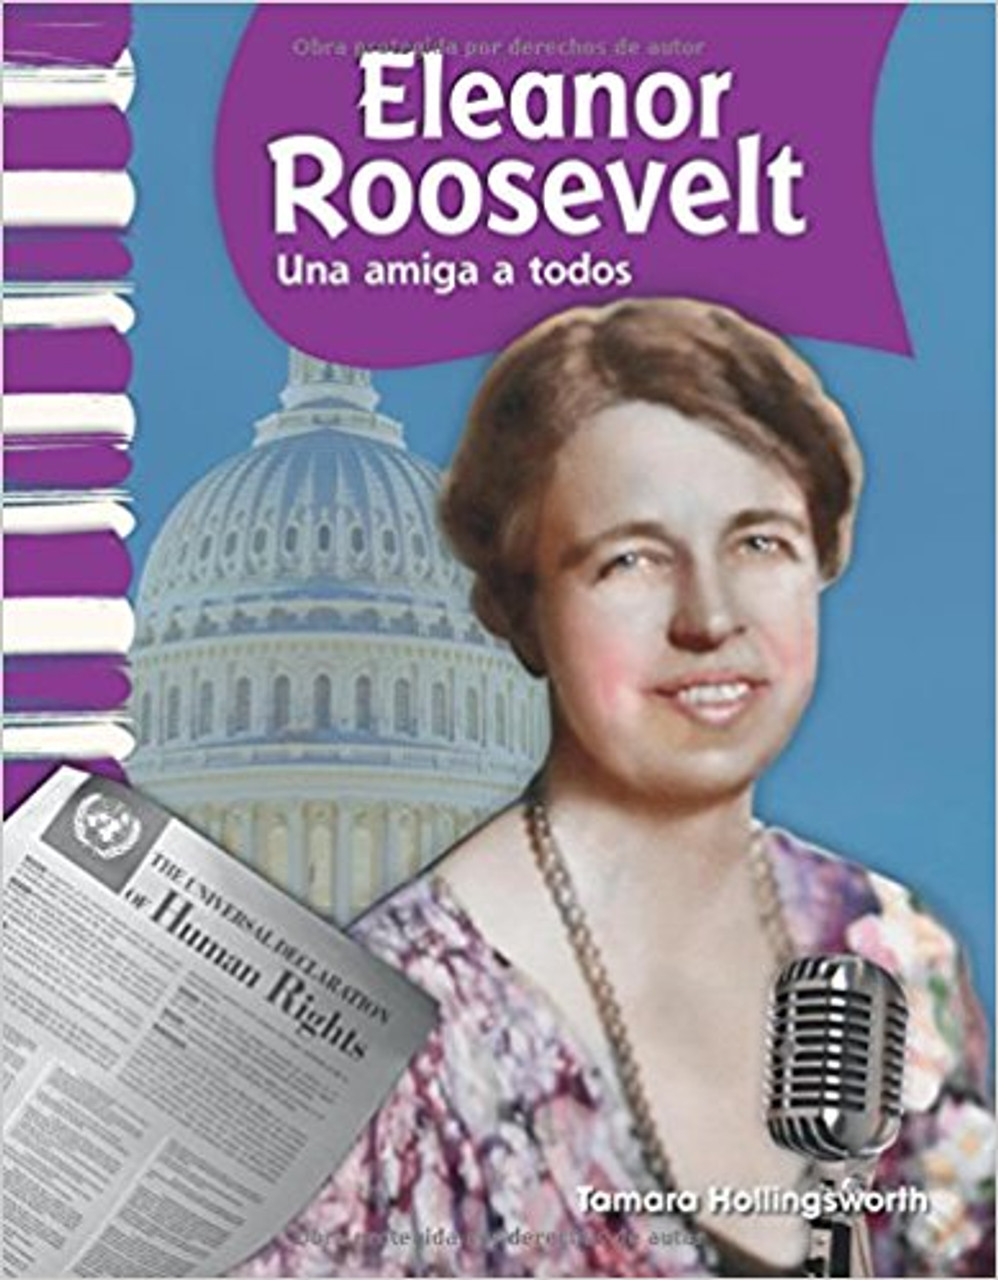 Eleanor Roosevelt: Una Amiga a Todos by Tamara Hollingsworth